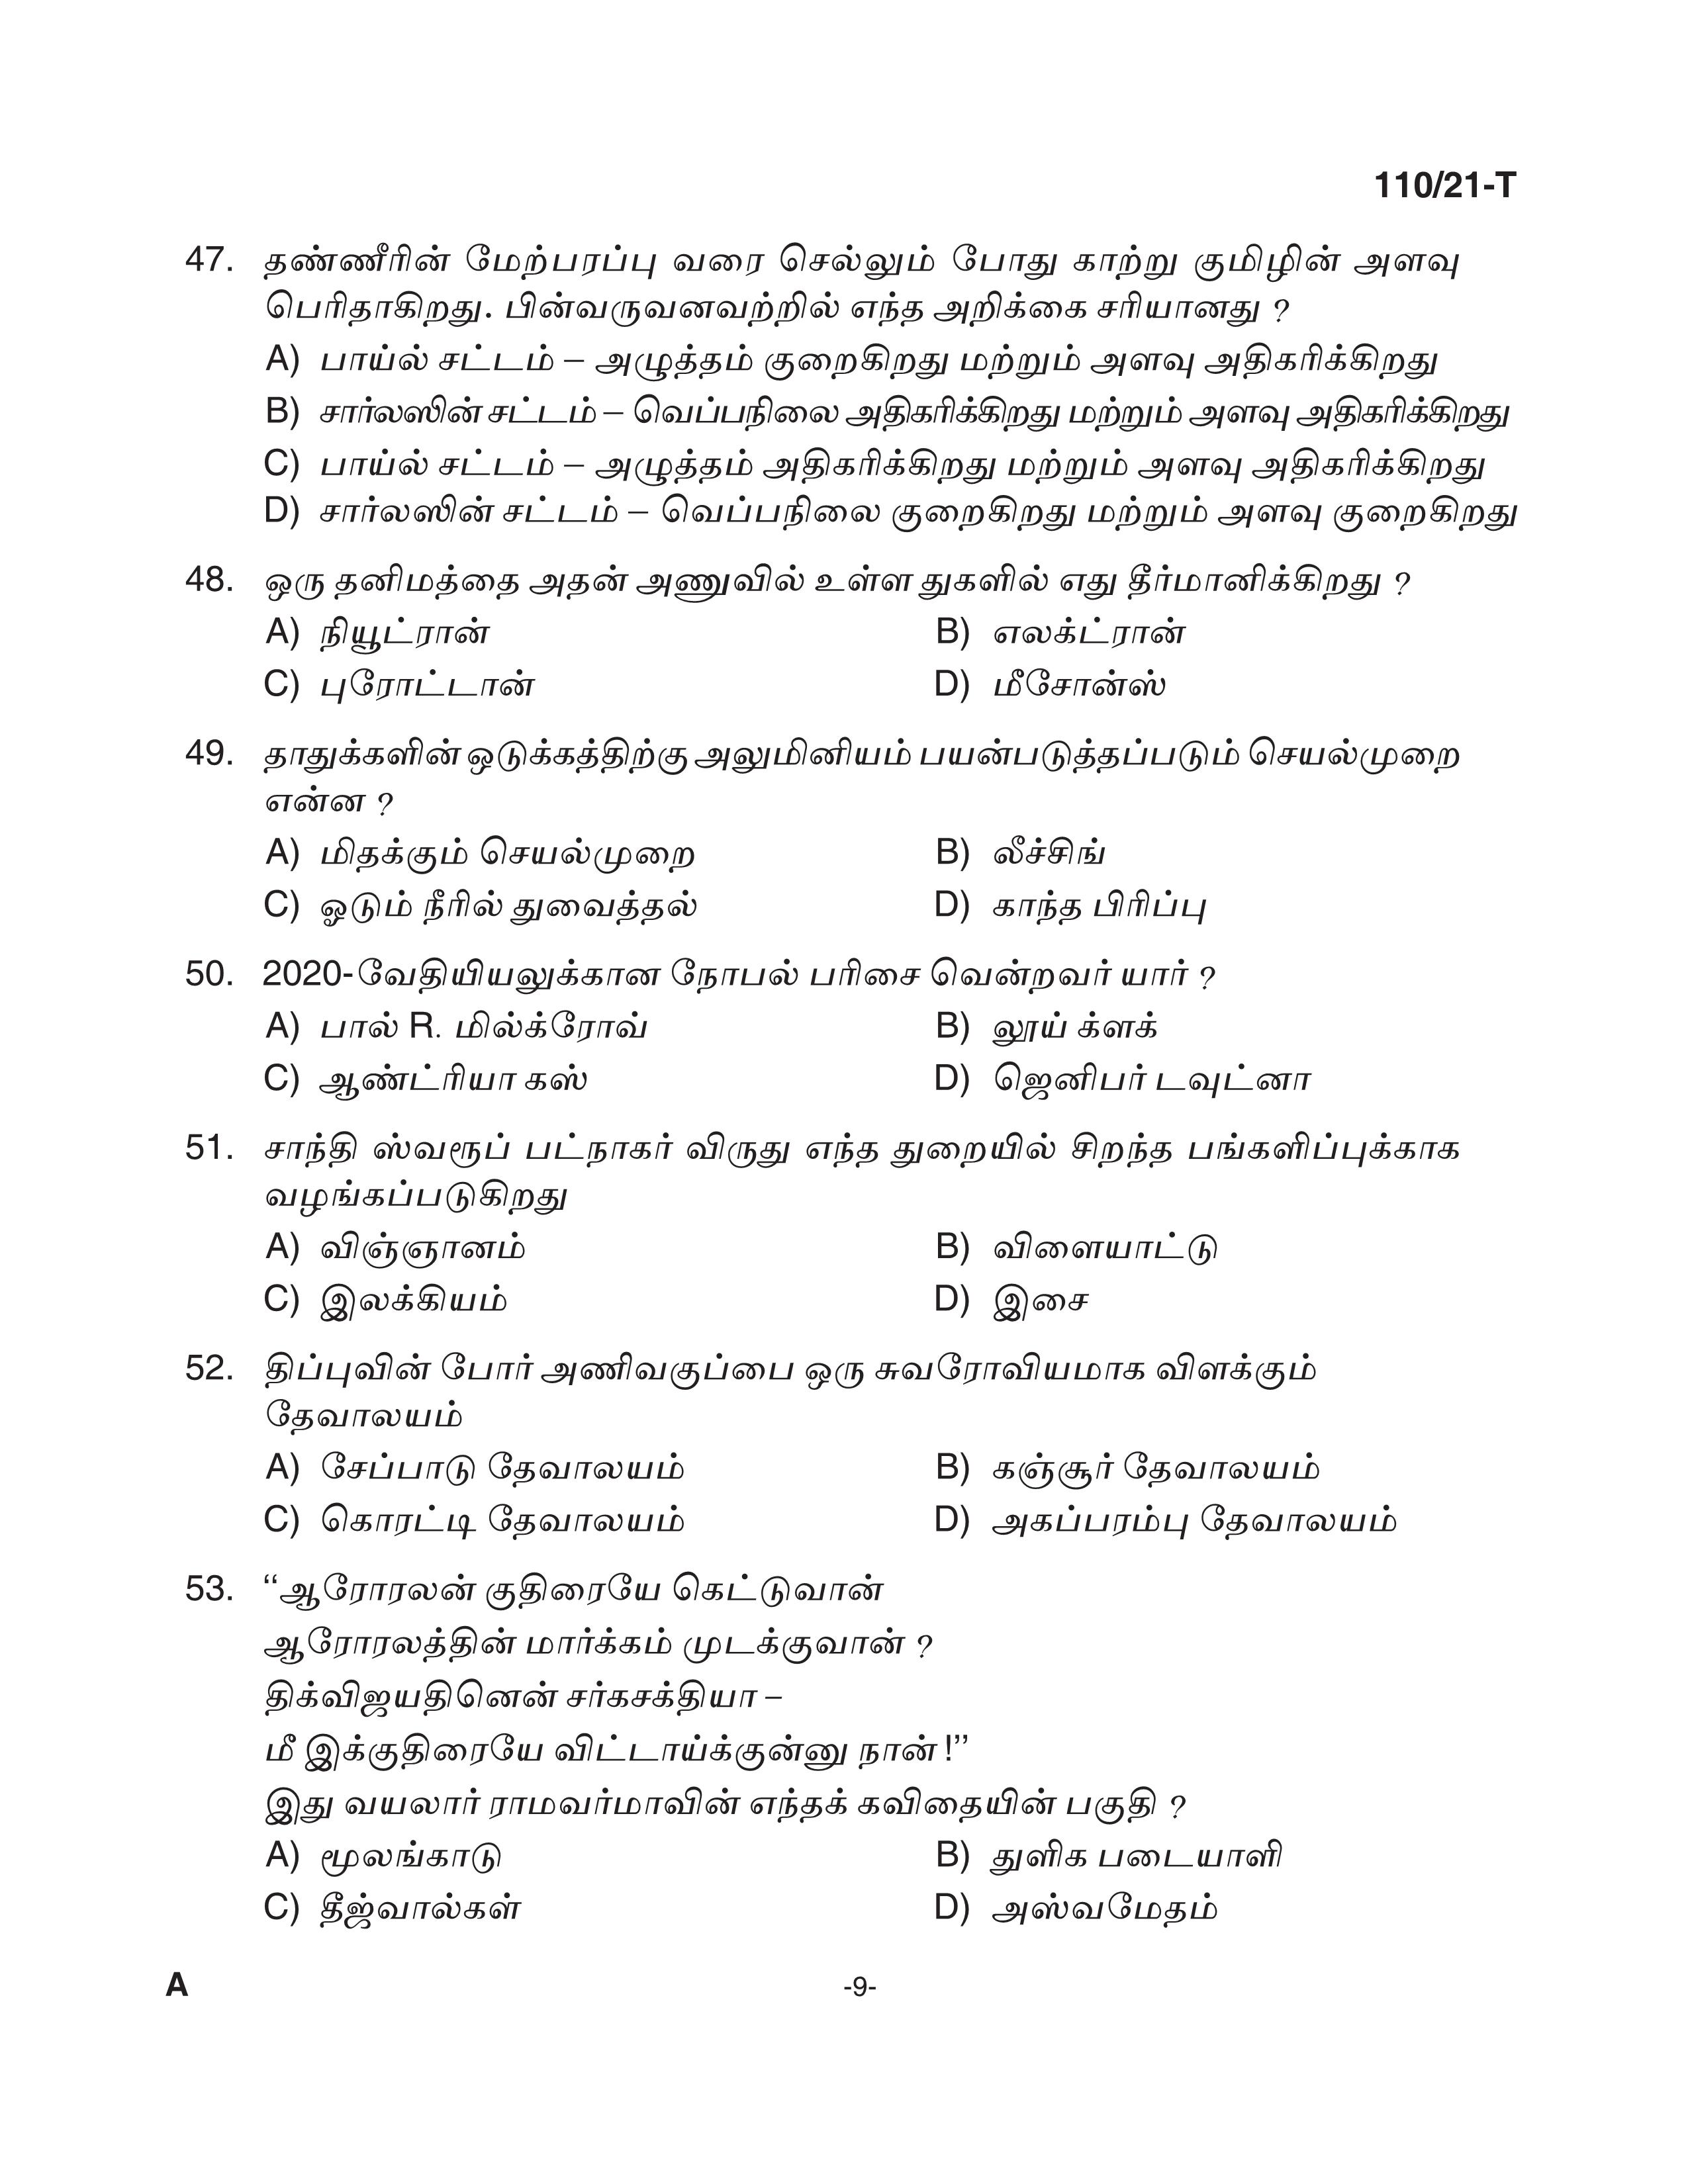 KPSC Assistant Grade II Sergeant Tamil Exam 2021 Code 1102021 T 8